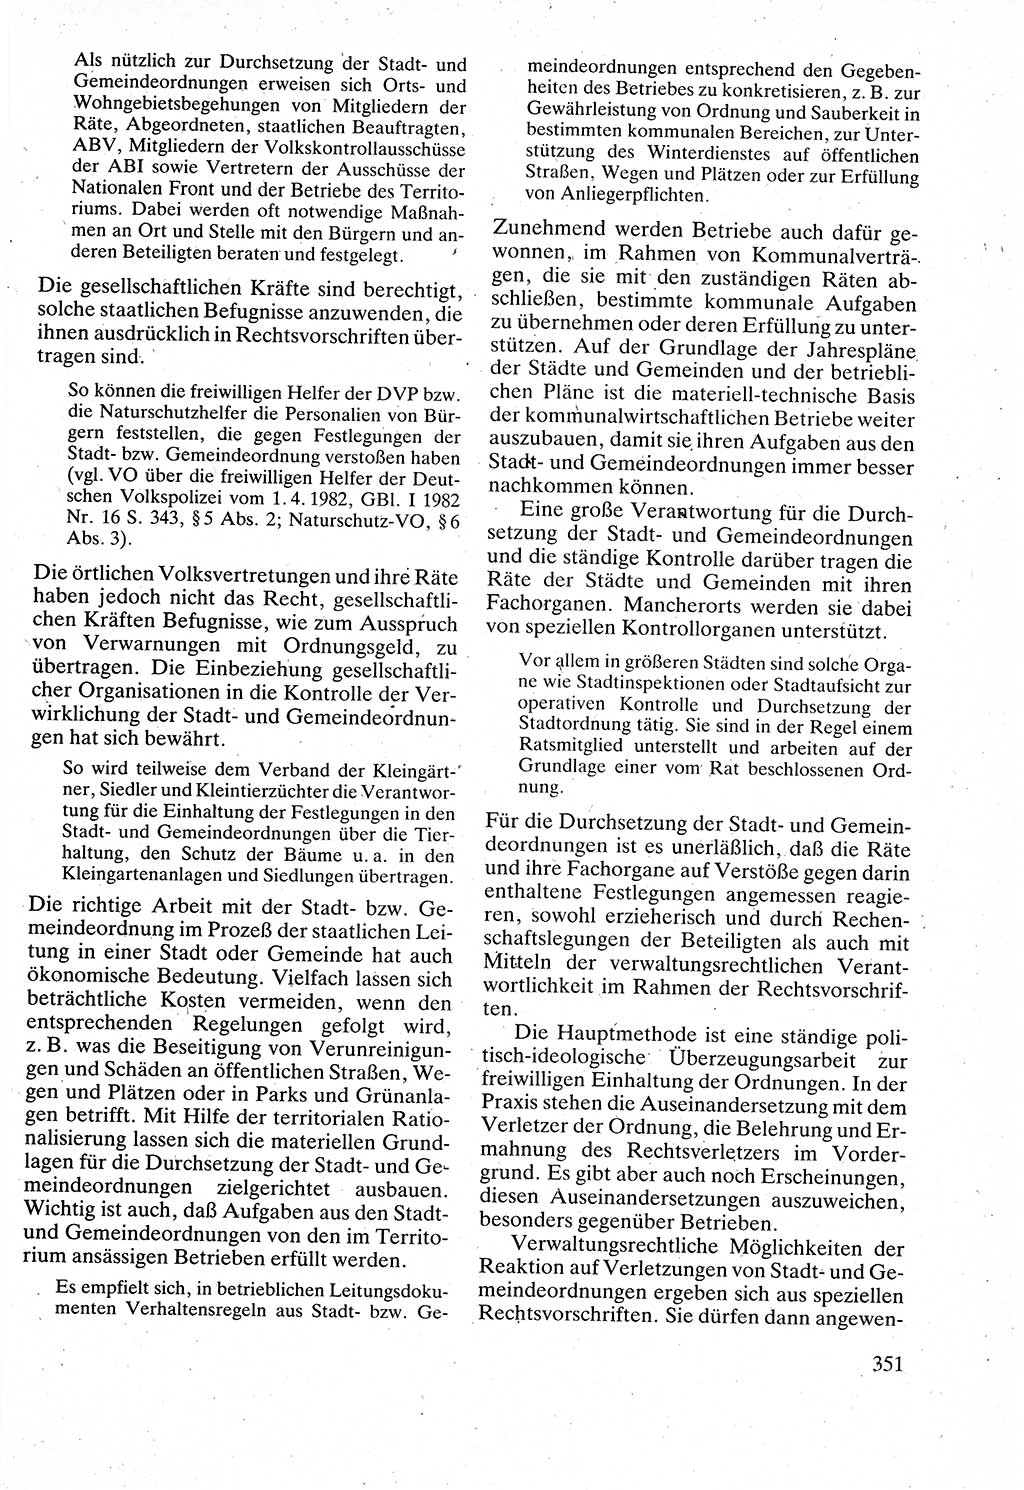 Verwaltungsrecht [Deutsche Demokratische Republik (DDR)], Lehrbuch 1988, Seite 351 (Verw.-R. DDR Lb. 1988, S. 351)